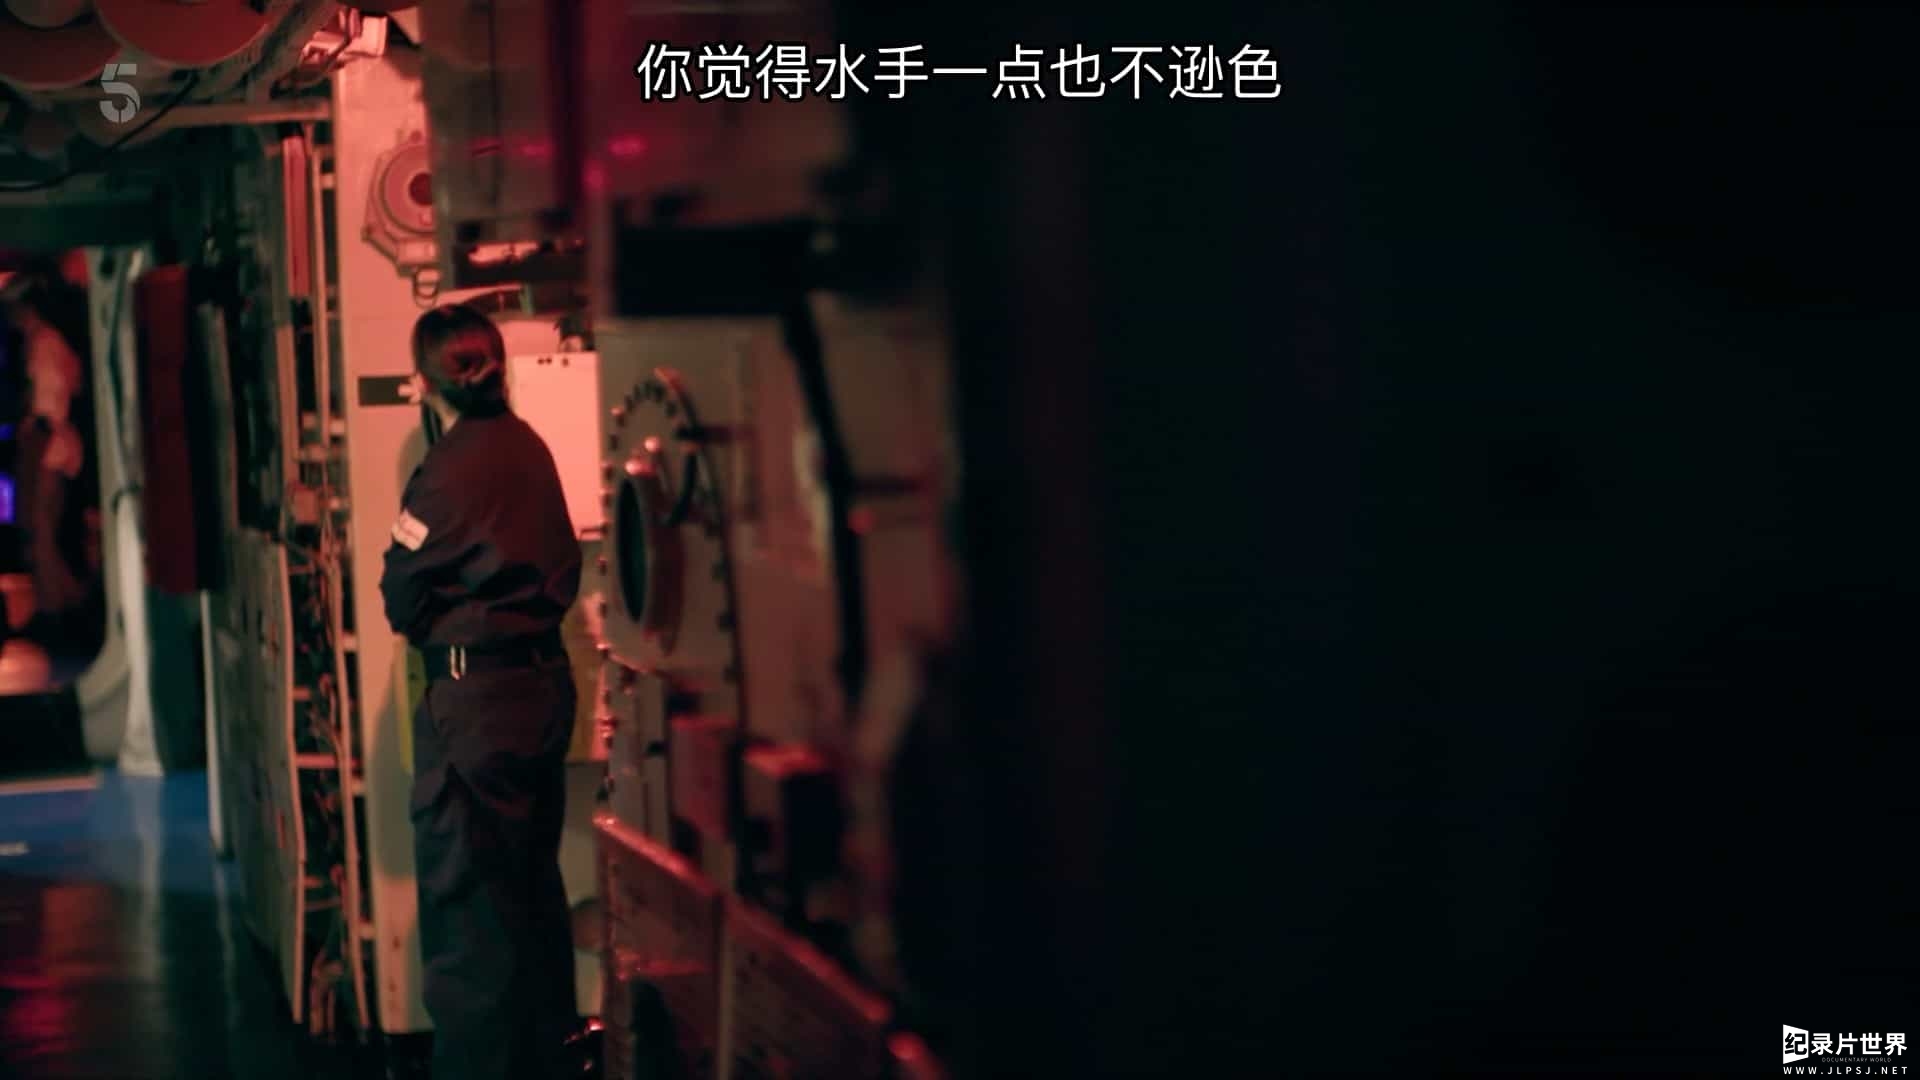 邓肯号导弹驱逐舰纪录片《战舰：海上生活 WarShip:life at sea》第1-3季